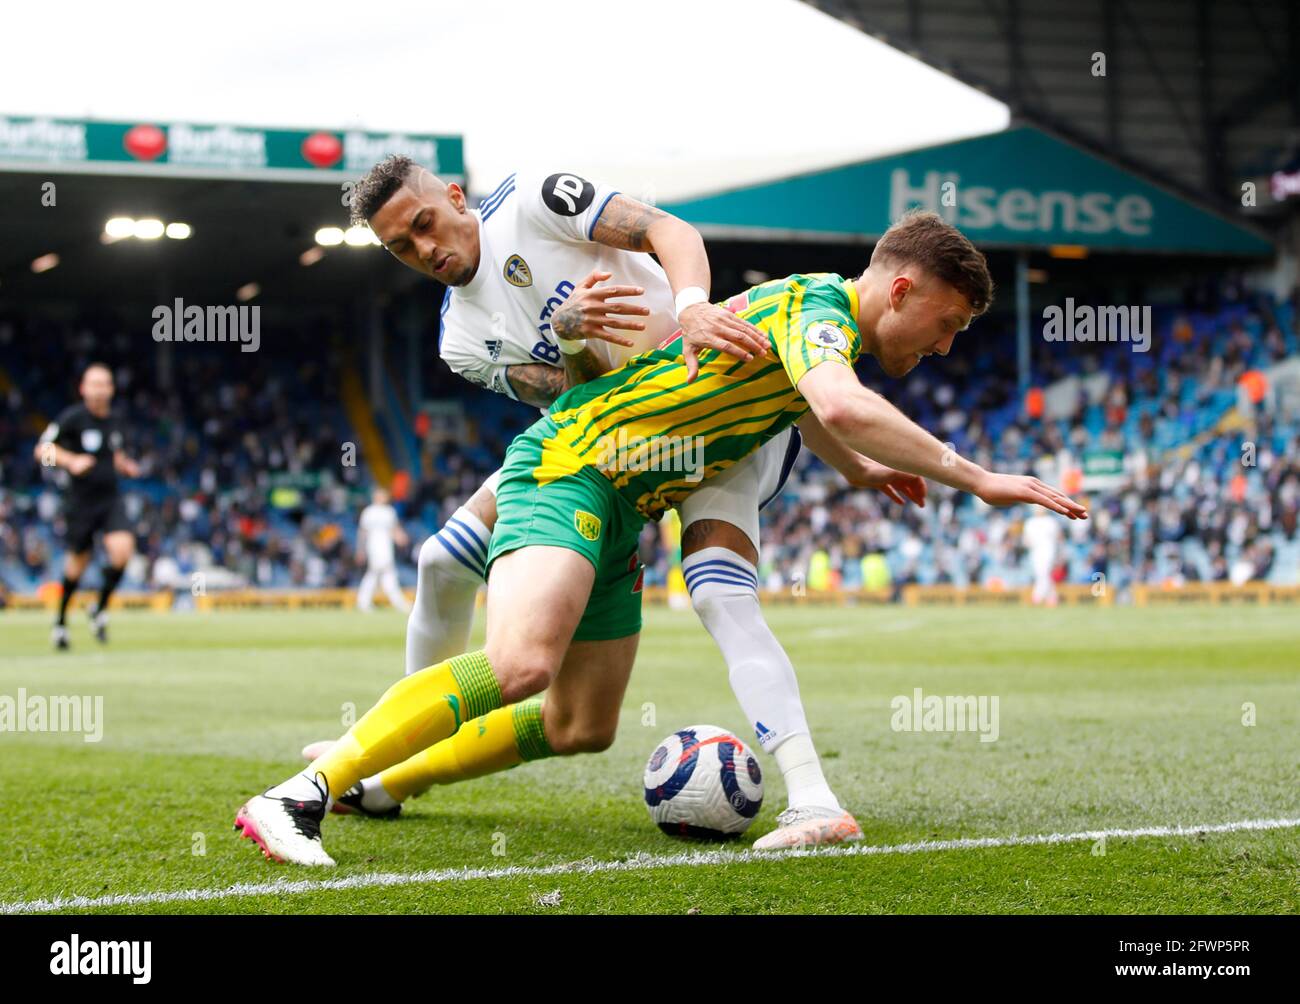 Dara O'Shea de West Bromwich Albion et Raphinha de Leeds United se battent pour le ballon lors du match de la Premier League à Elland Road, Leeds. Date de la photo: Dimanche 23 mai 2021. Banque D'Images